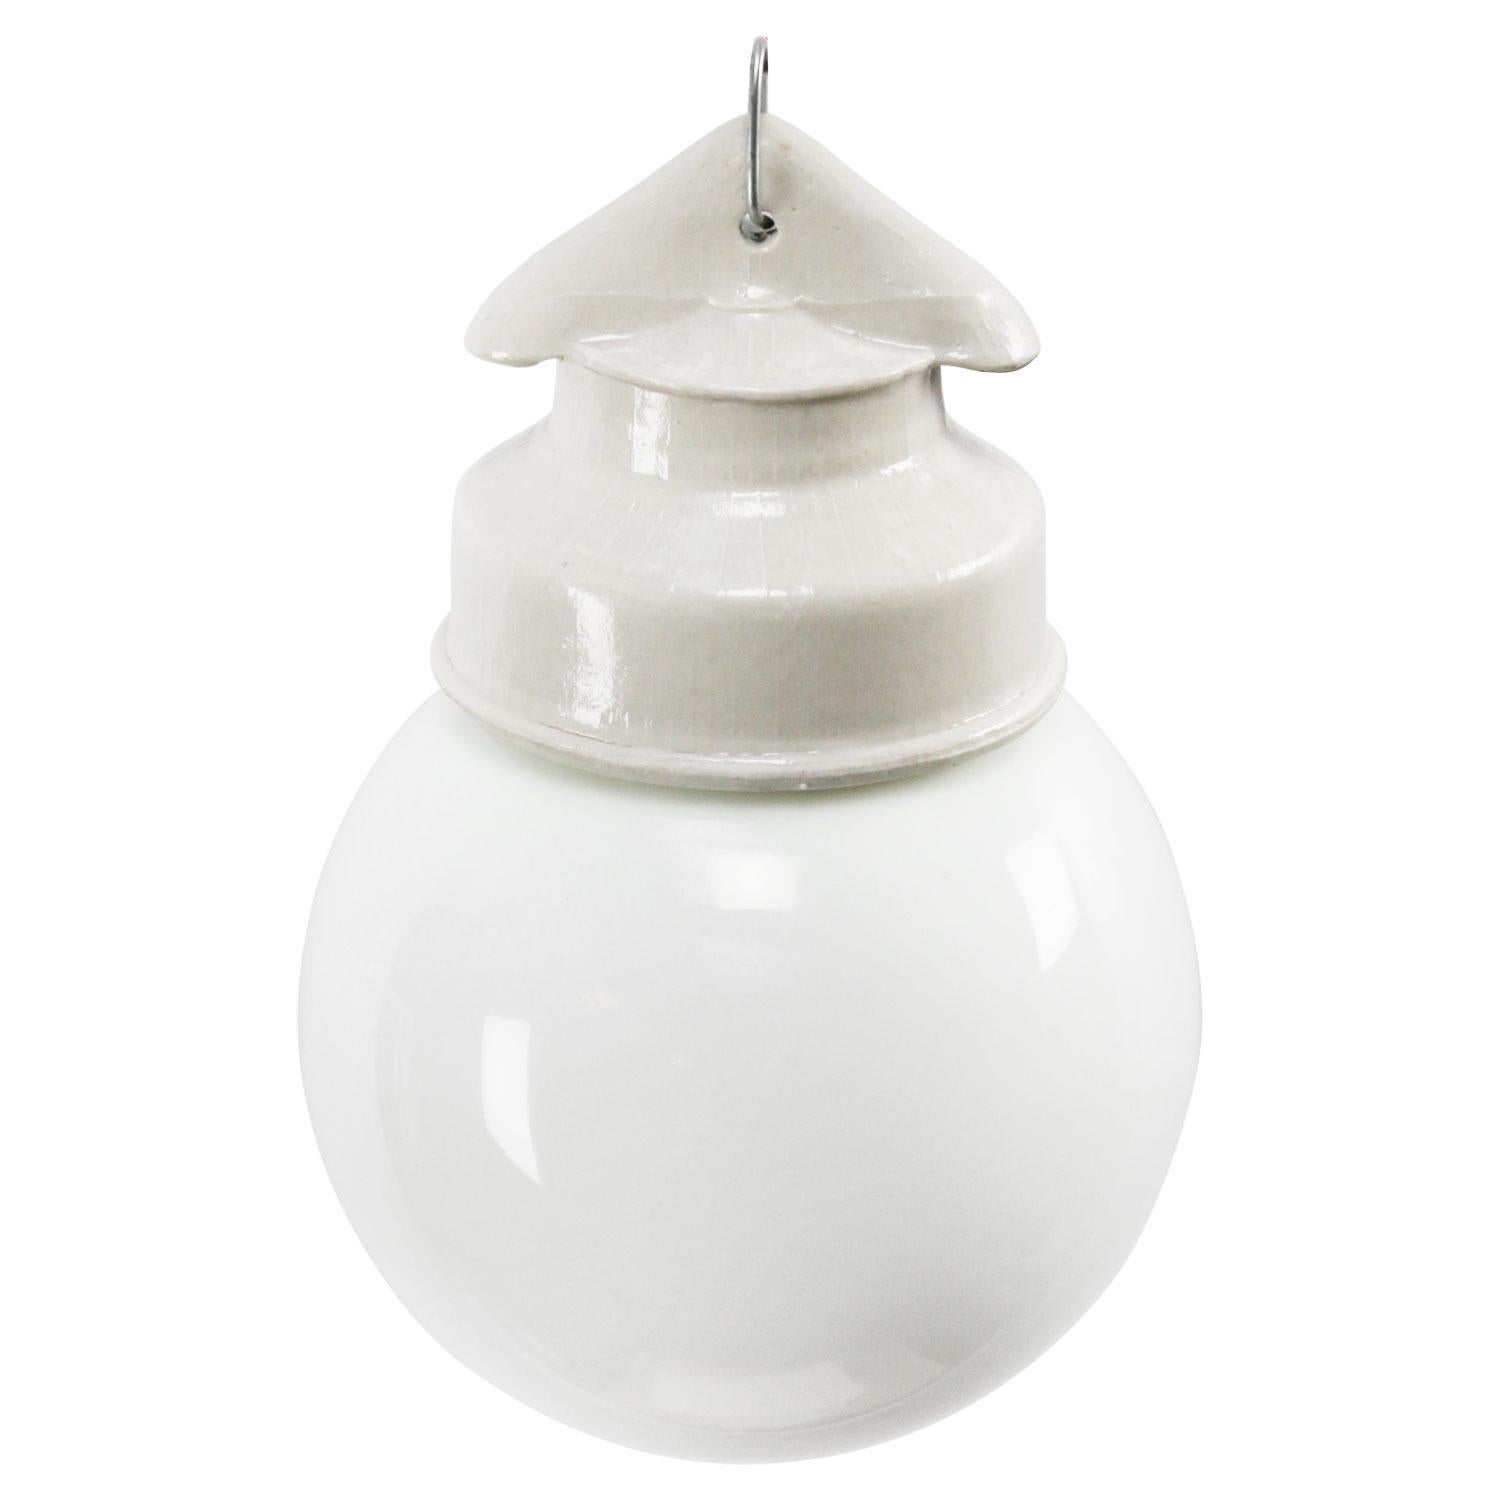 Industrielles Pendel.
Weißes Porzellan, Opalglas.
2 Leiter, keine Erdung.

Gewicht: 1,06 kg / 2,3 lb

Der Preis gilt für jeden einzelnen Artikel. Alle Lampen sind nach internationalen Normen für Glühbirnen, energieeffiziente und LED-Lampen